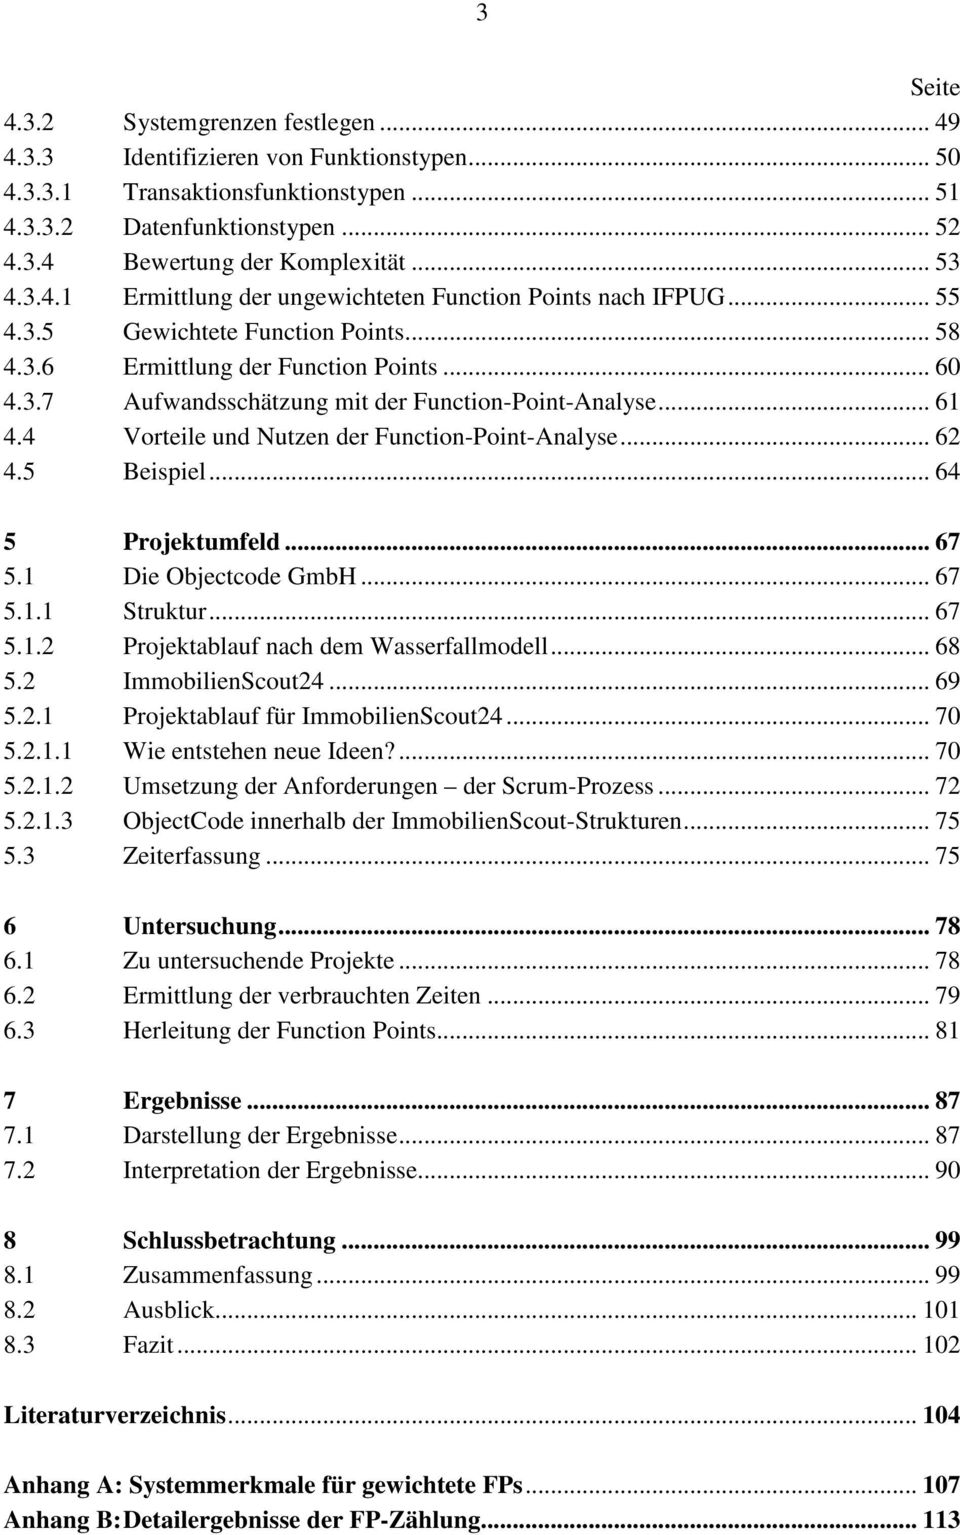 .. 61 4.4 Vorteile und Nutzen der Function-Point-Analyse... 62 4.5 Beispiel... 64 5 Projektumfeld... 67 5.1 Die Objectcode GmbH... 67 5.1.1 Struktur... 67 5.1.2 Projektablauf nach dem Wasserfallmodell.